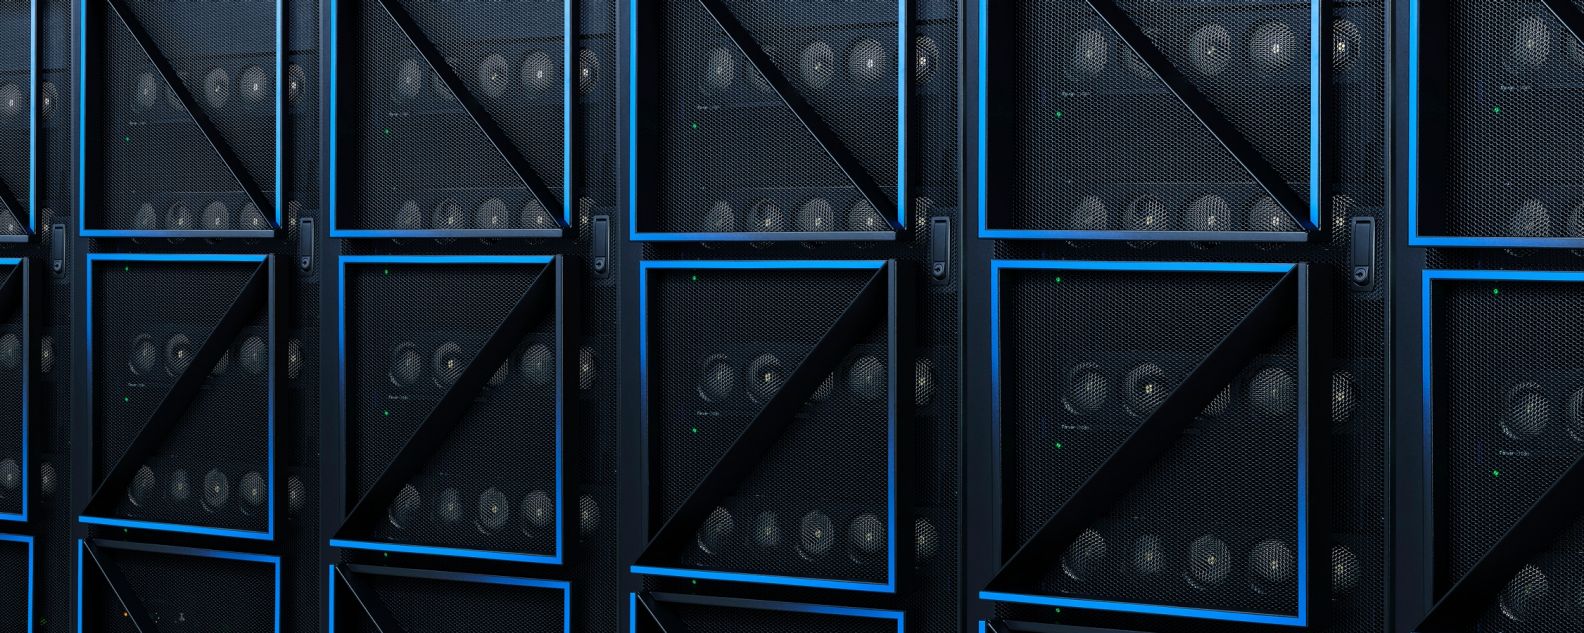 Uma fileira de racks de servidor de computador em um data center, apresentando o design da porta IBM Power10